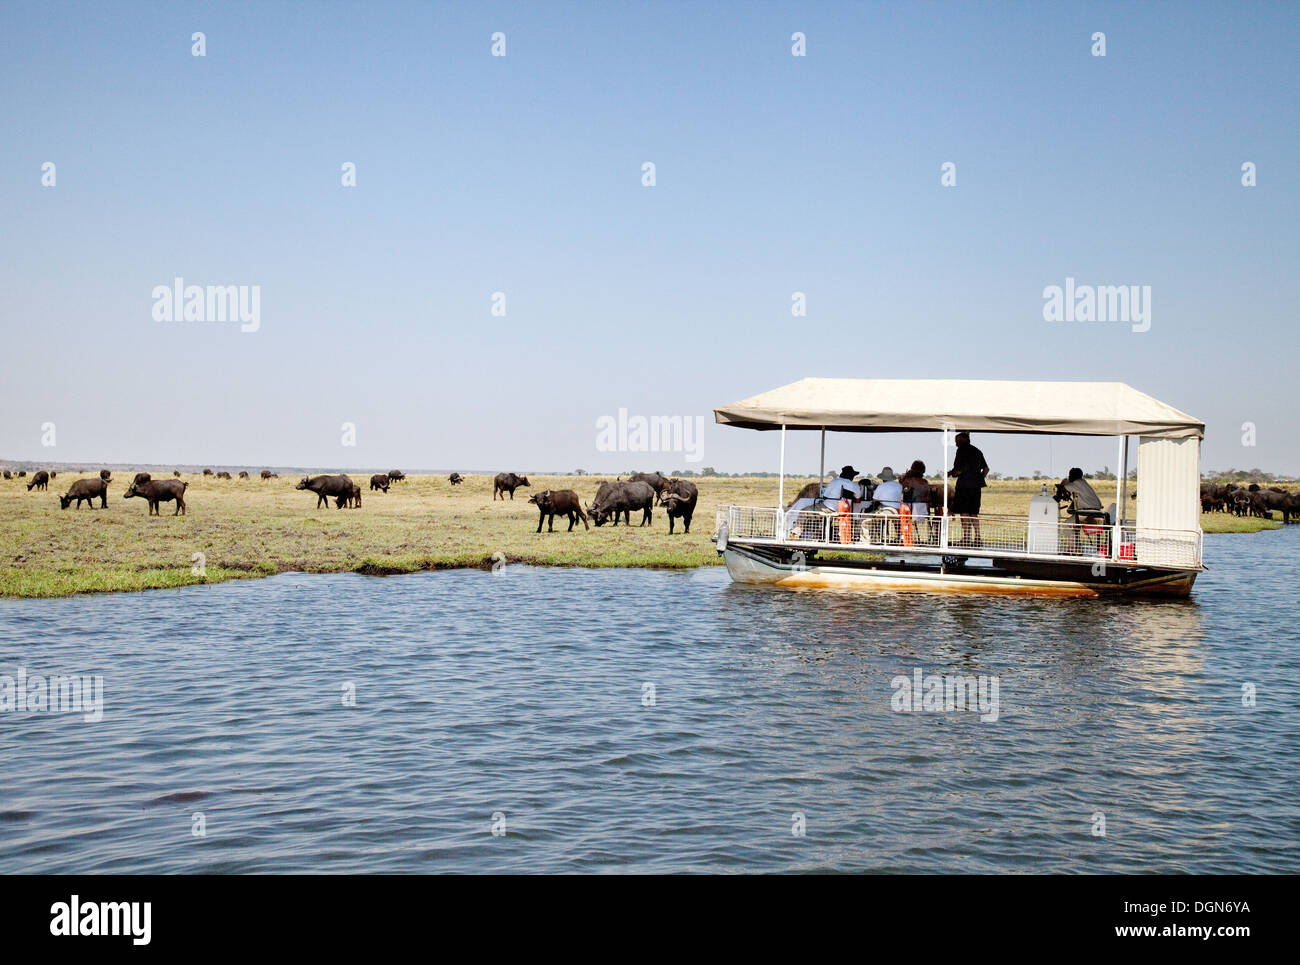 Les touristes sur une croisière sur la rivière Chobe safari regarder un troupeau de bisons, Chobe National Park, Botswana Afrique Banque D'Images